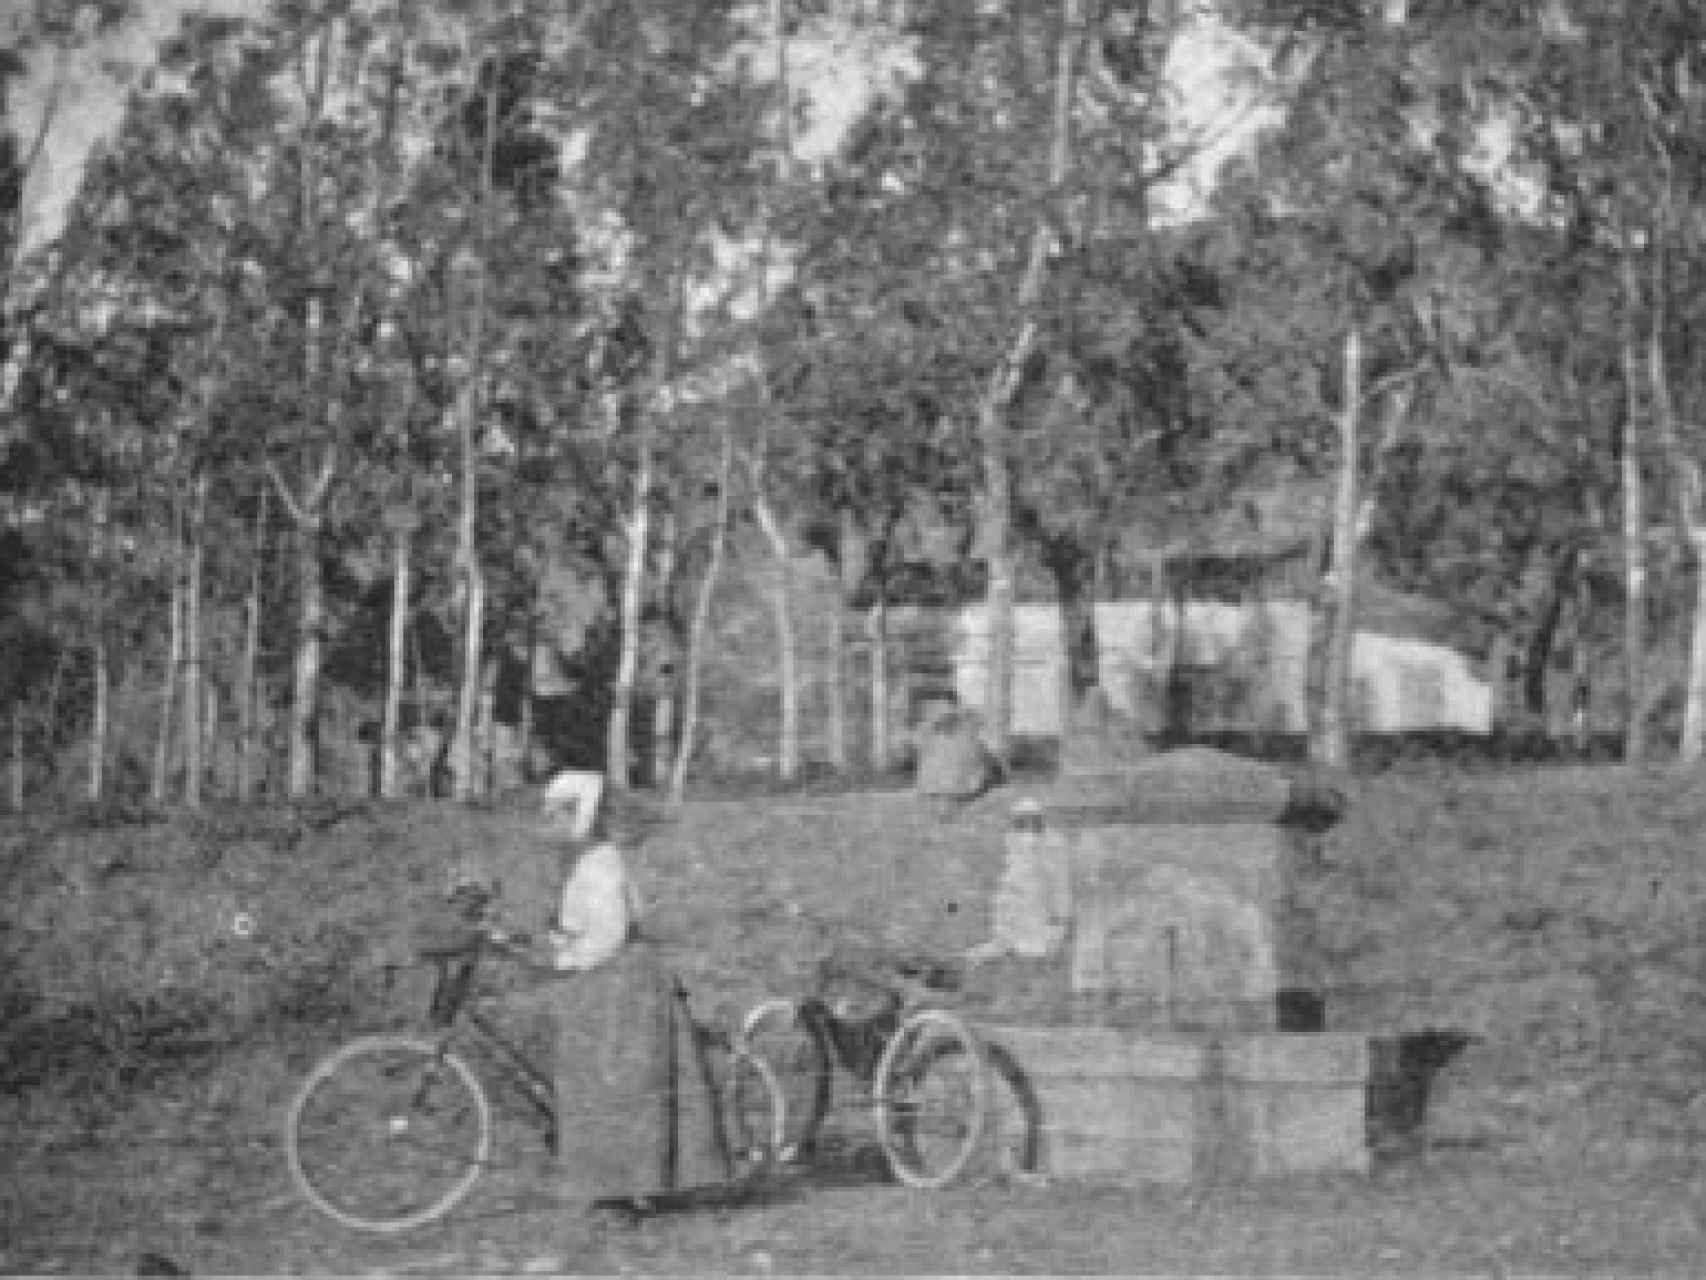 Fanny Bullock con su bicicleta en Argelia.